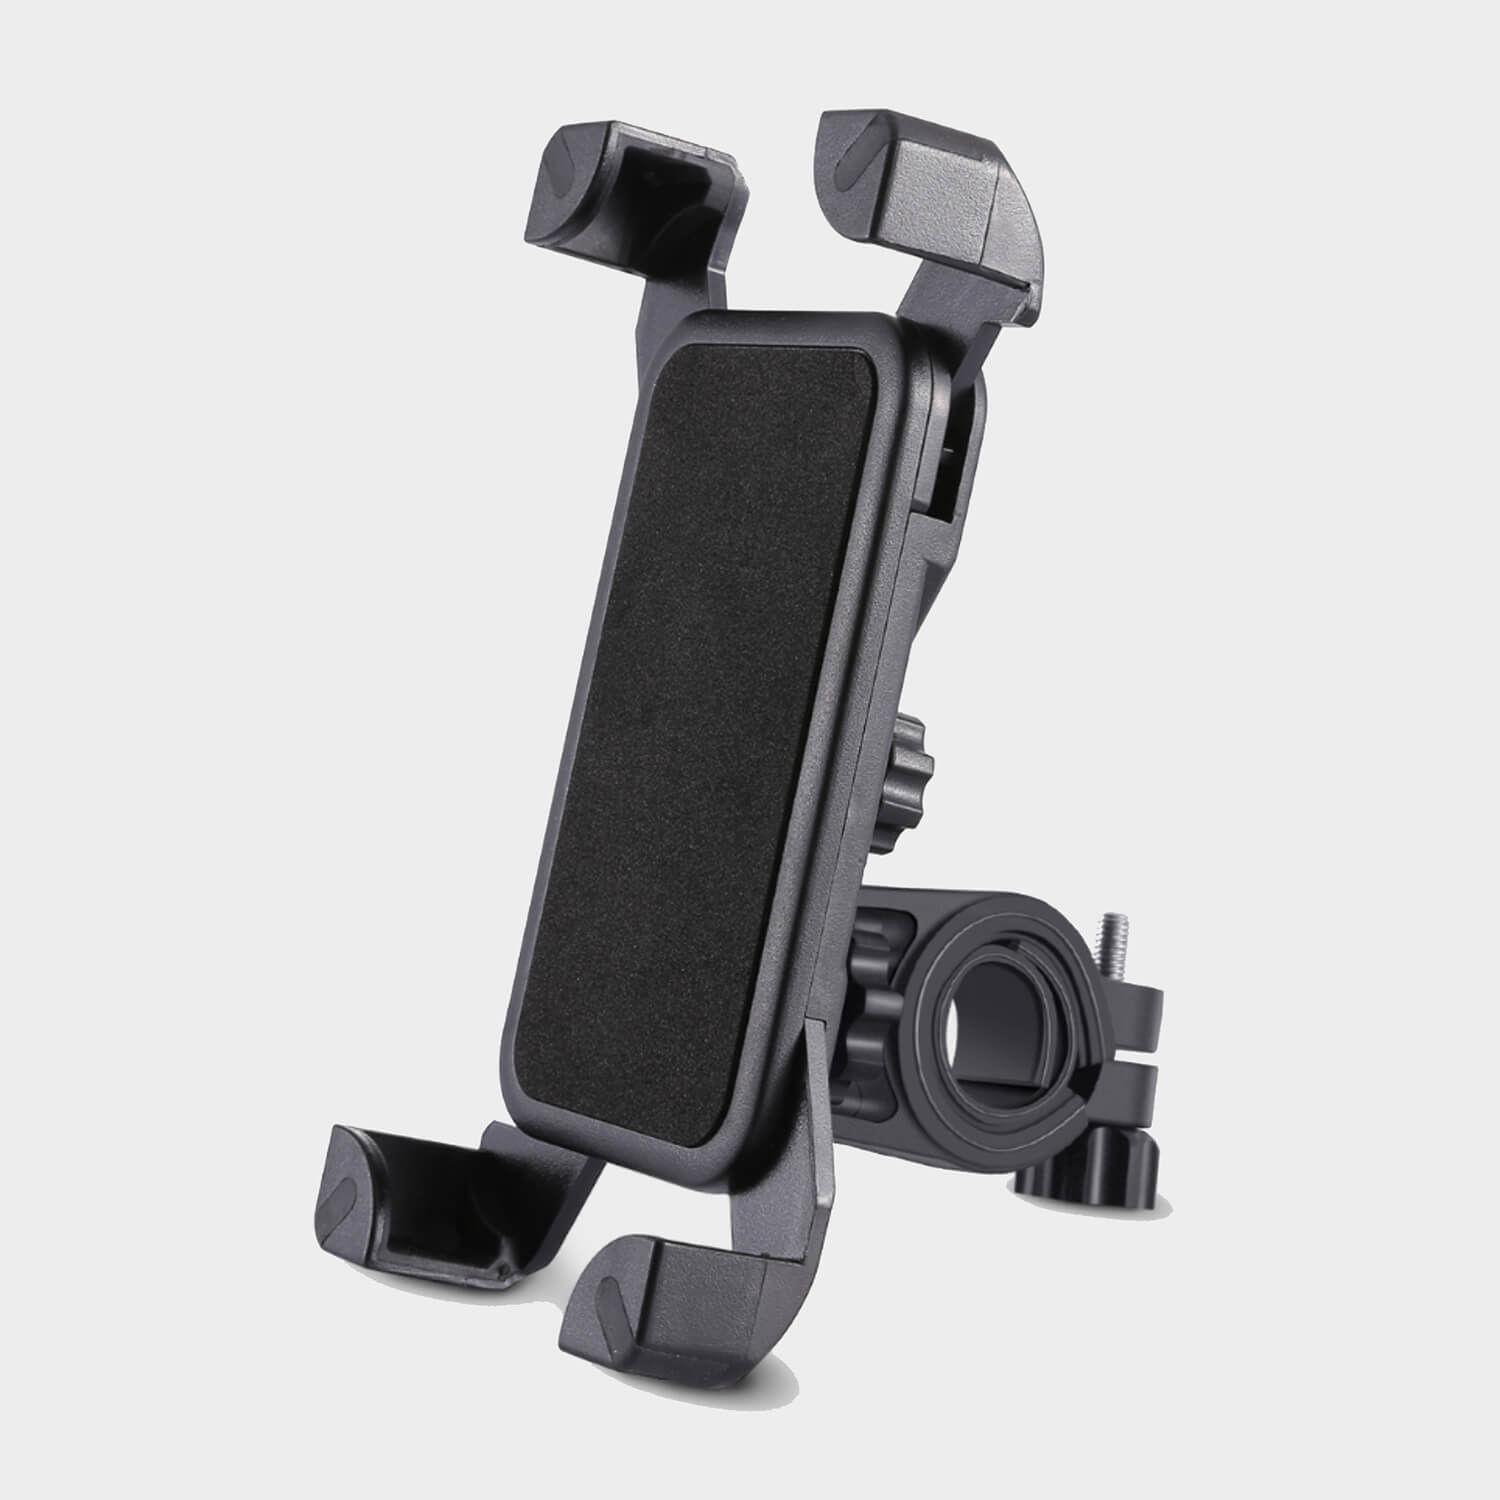 Esoulk Universal Bicycle Phone Holder / Mount (EK3002) - Retail Packaging  Black